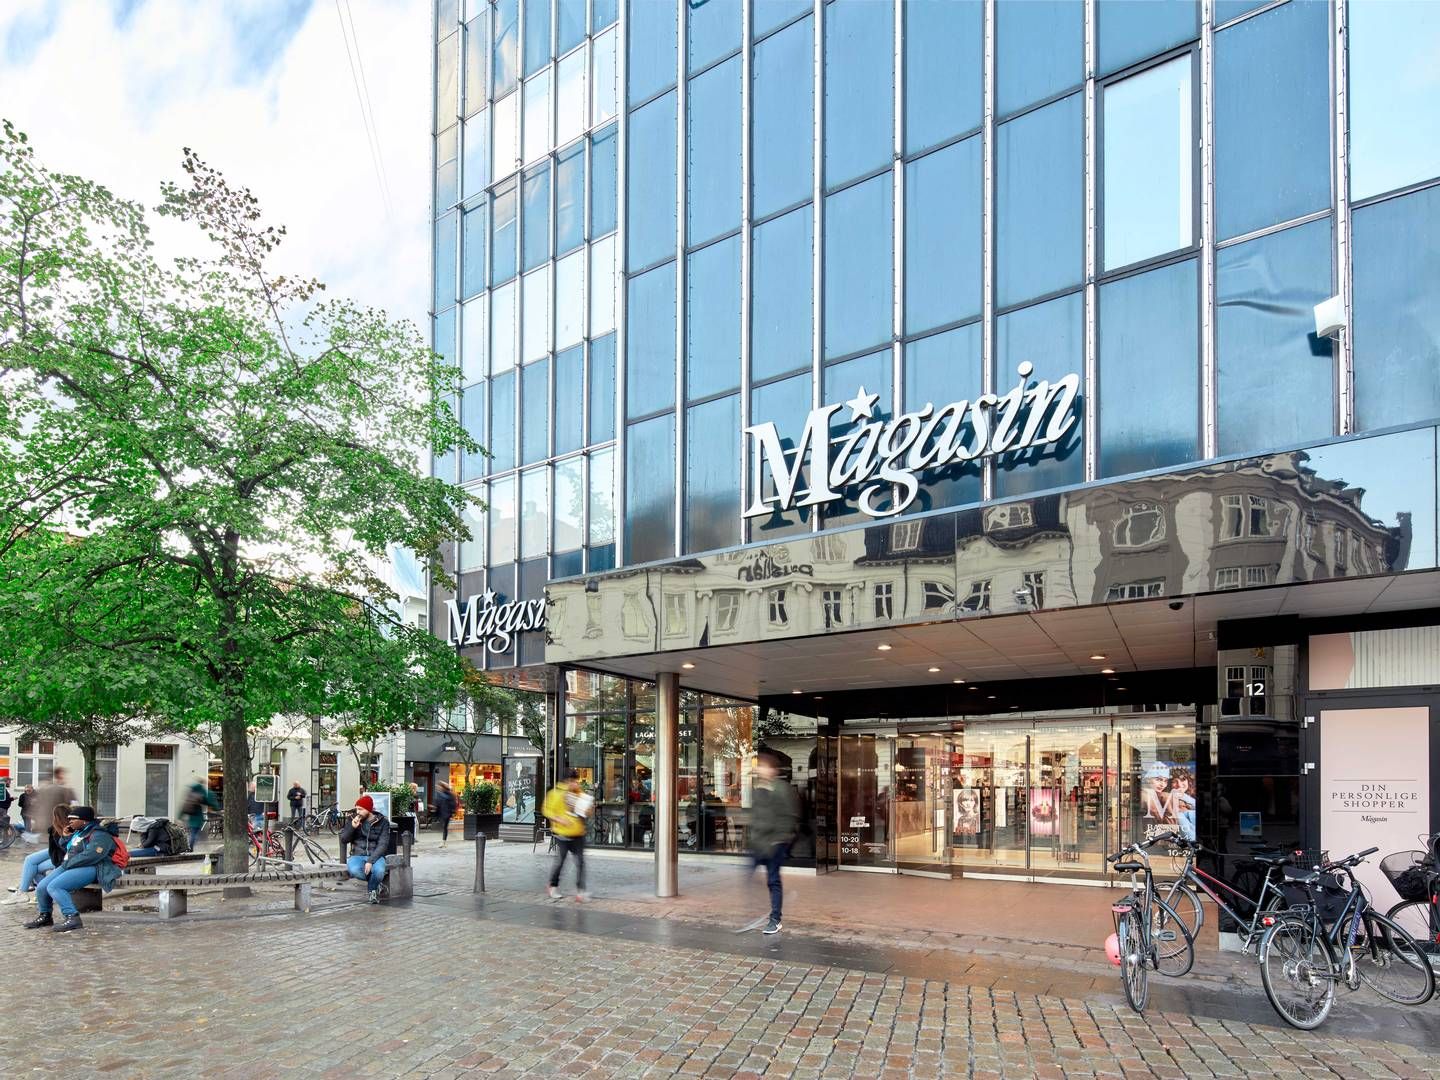 Magasin Aarhus er et af syv danske stormagasiner. Forløberen til det, der i dag er kendt som Magasin, blev stiftet i 1868. | Photo: Lead Agency Pr